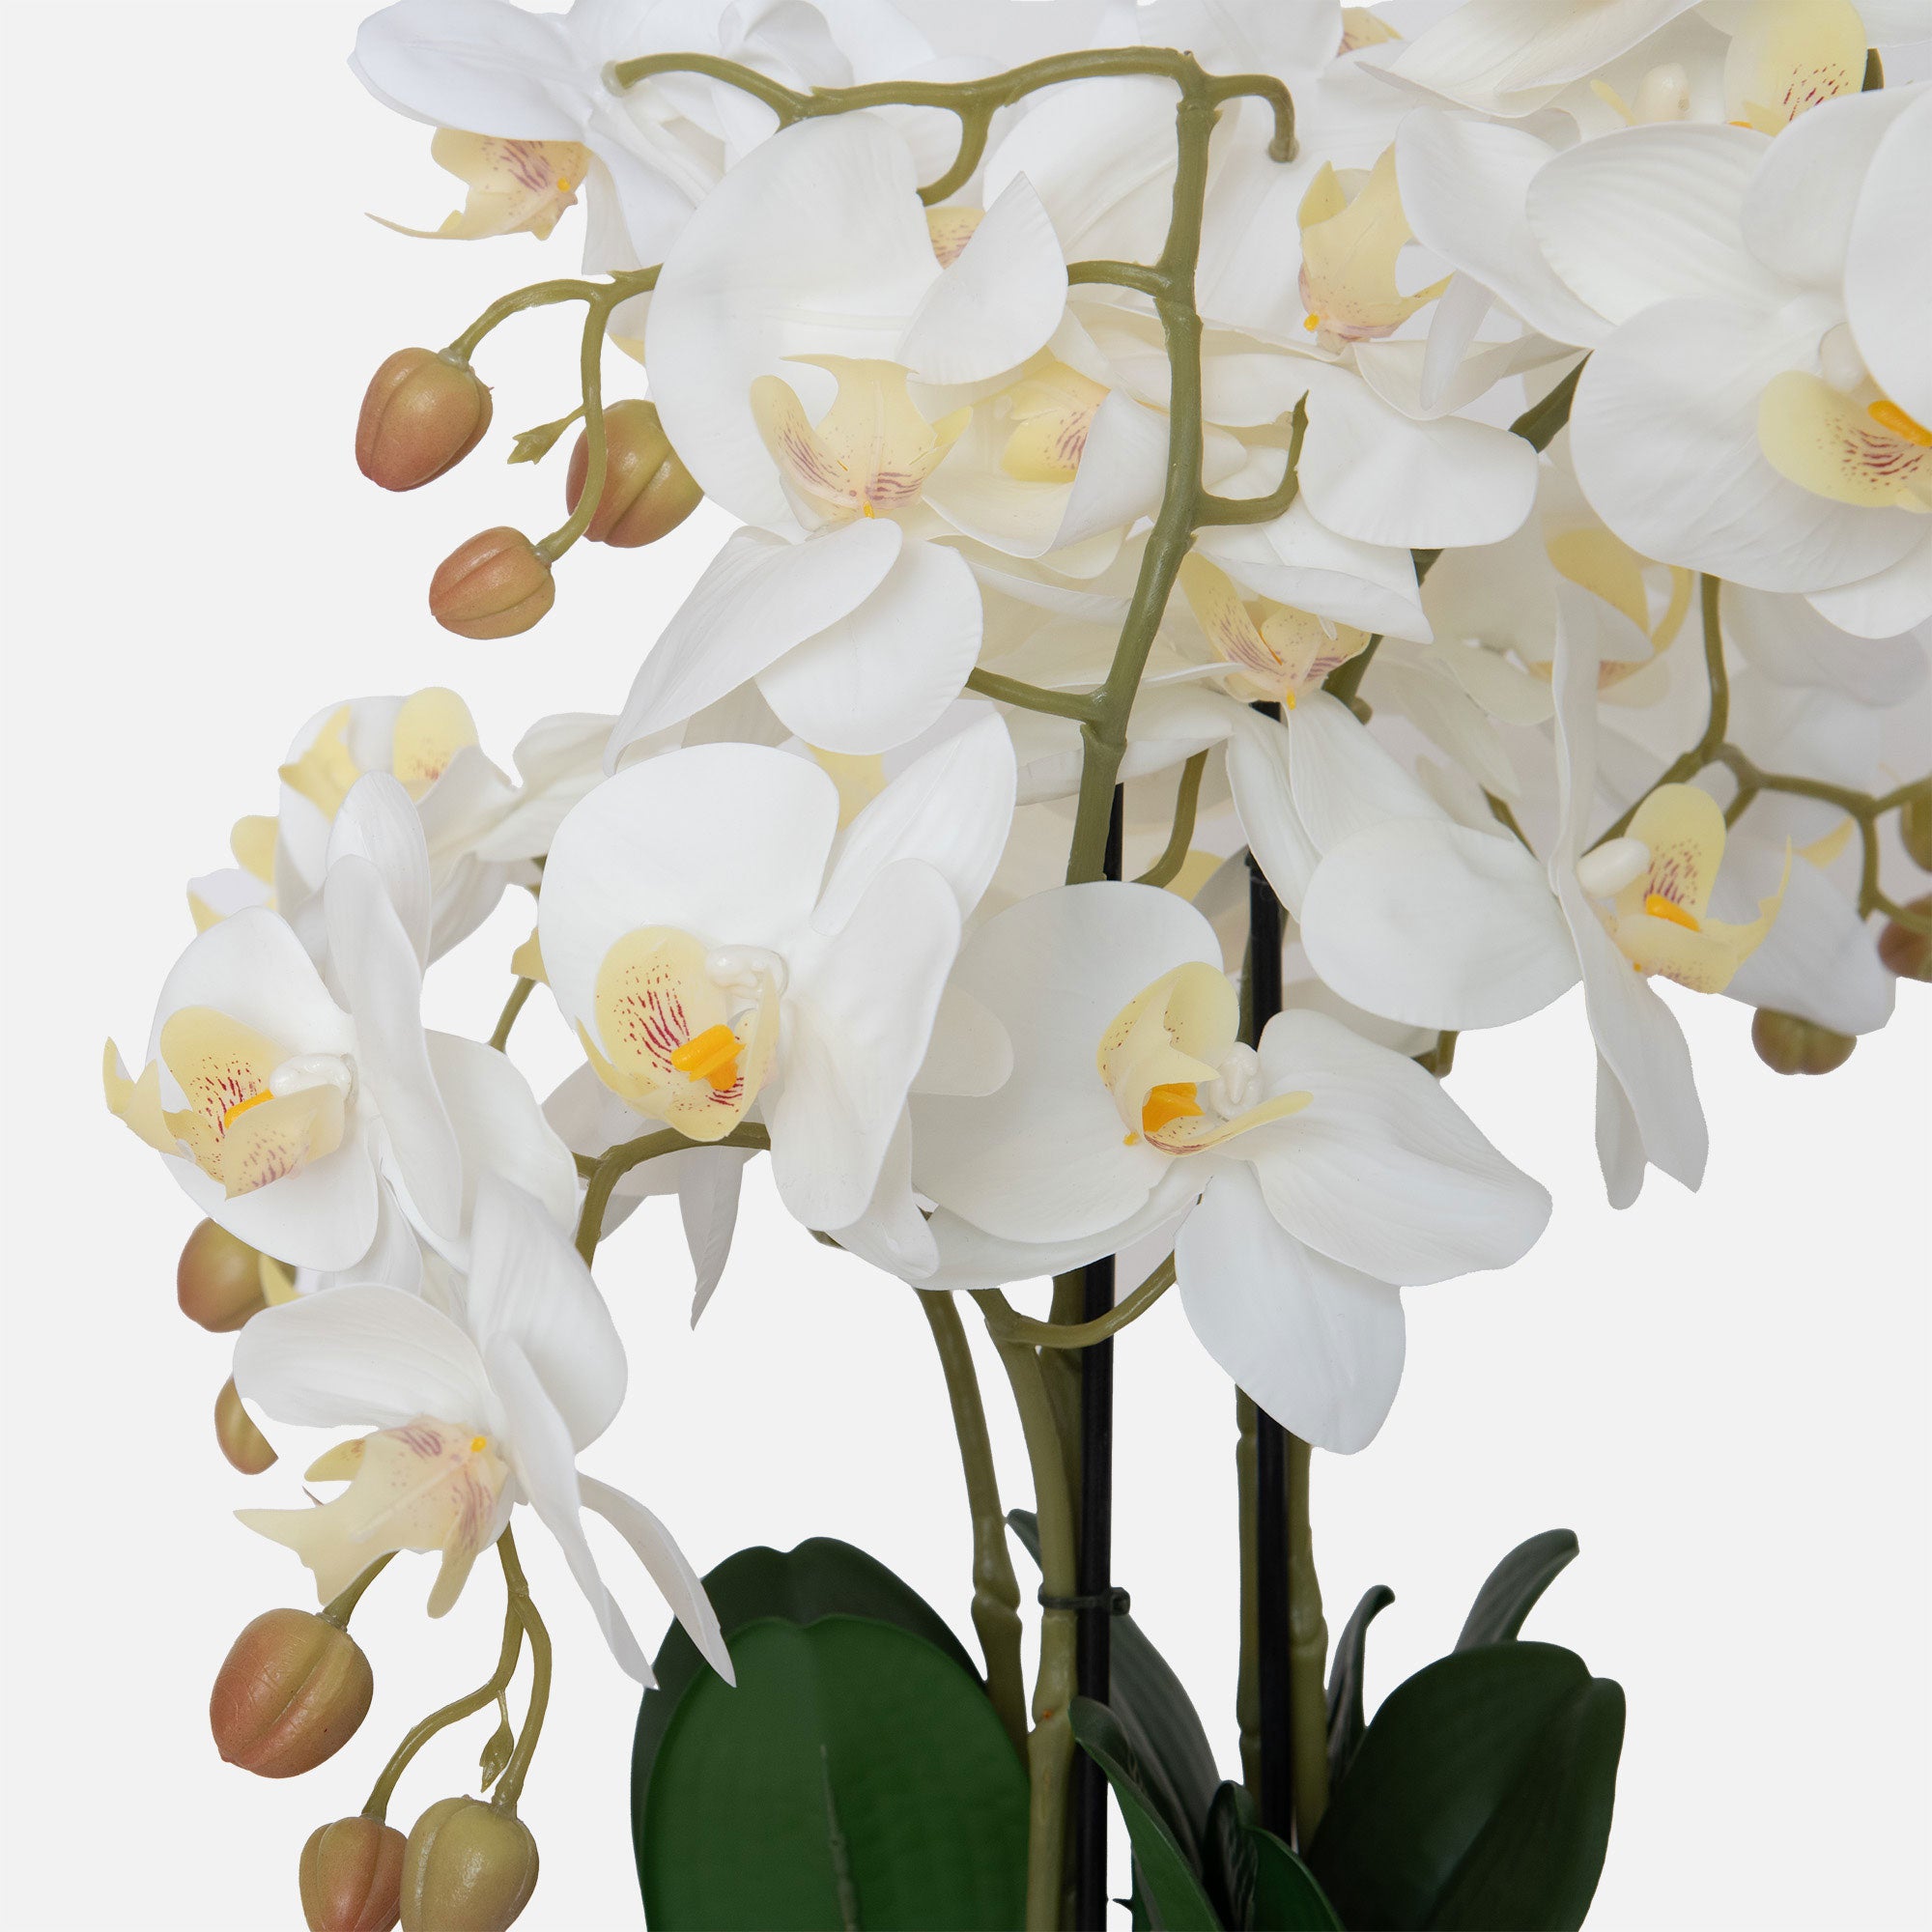 Orchid 3 Stem Arrangement - White in Ceramic Pot